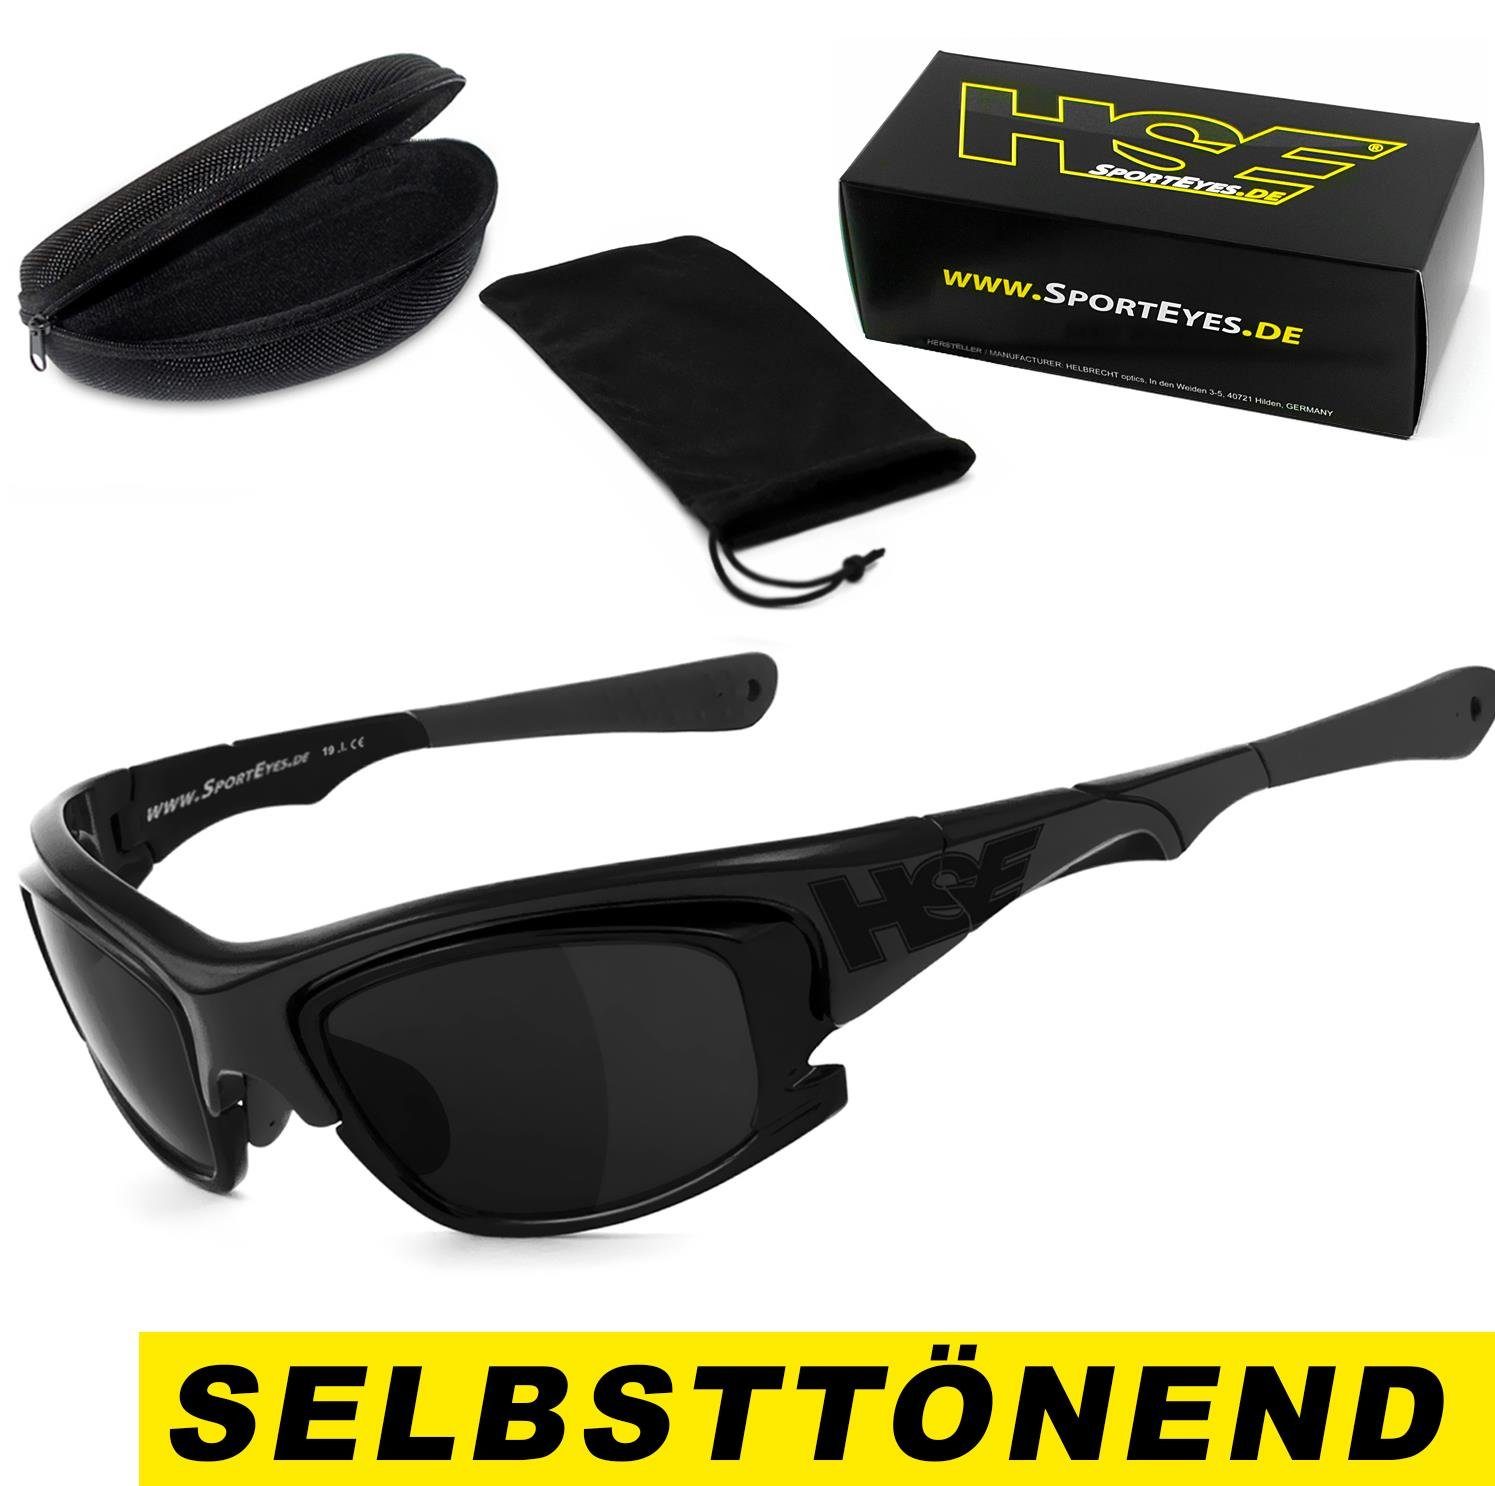 HSE - Gläser selbsttönende 2015, Sportbrille SportEyes schnell